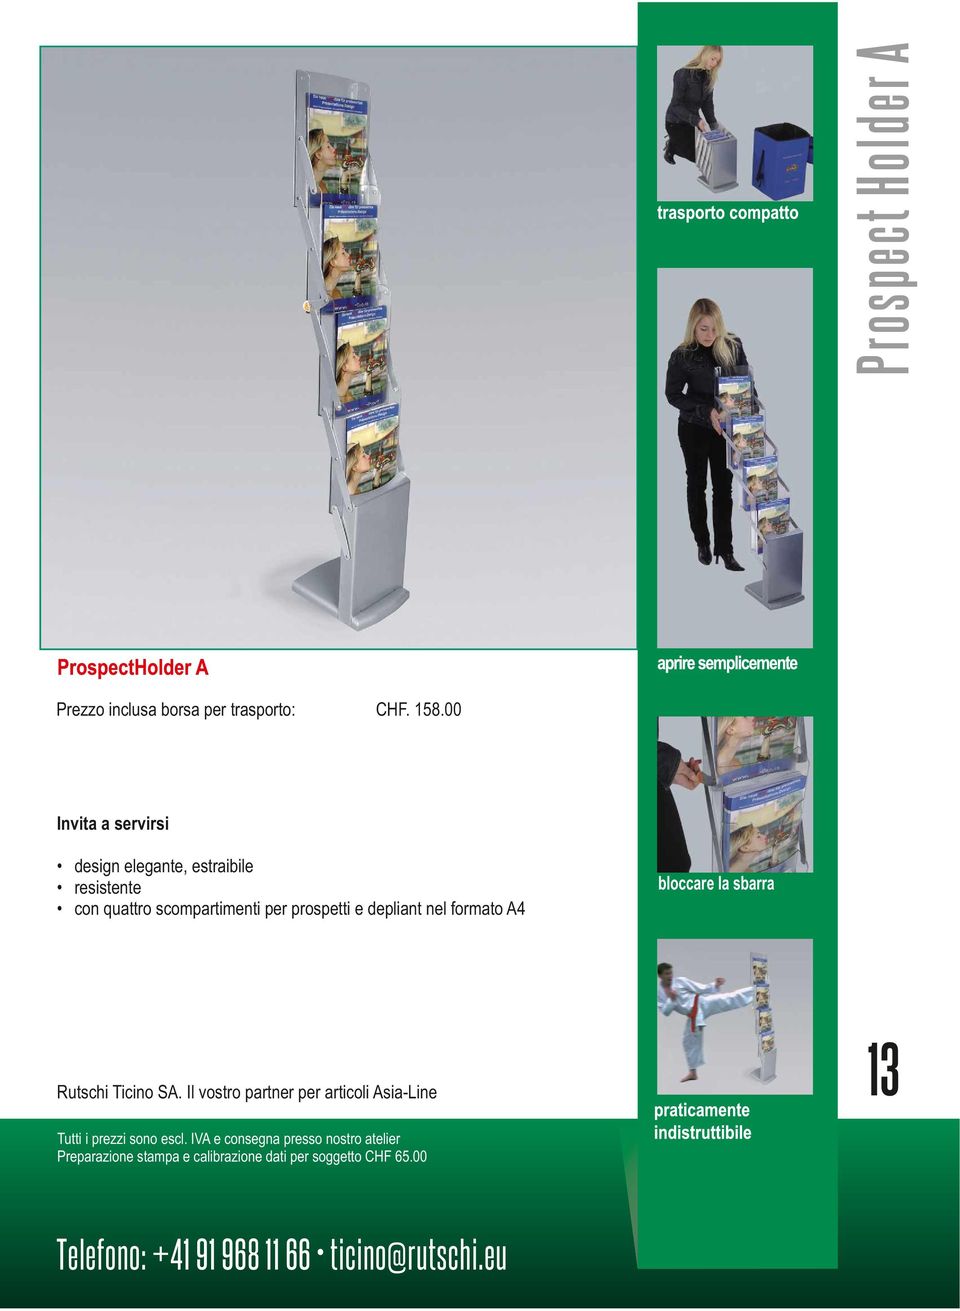 scompartimenti per prospetti e depliant nel formato A4 Preparazione stampa e